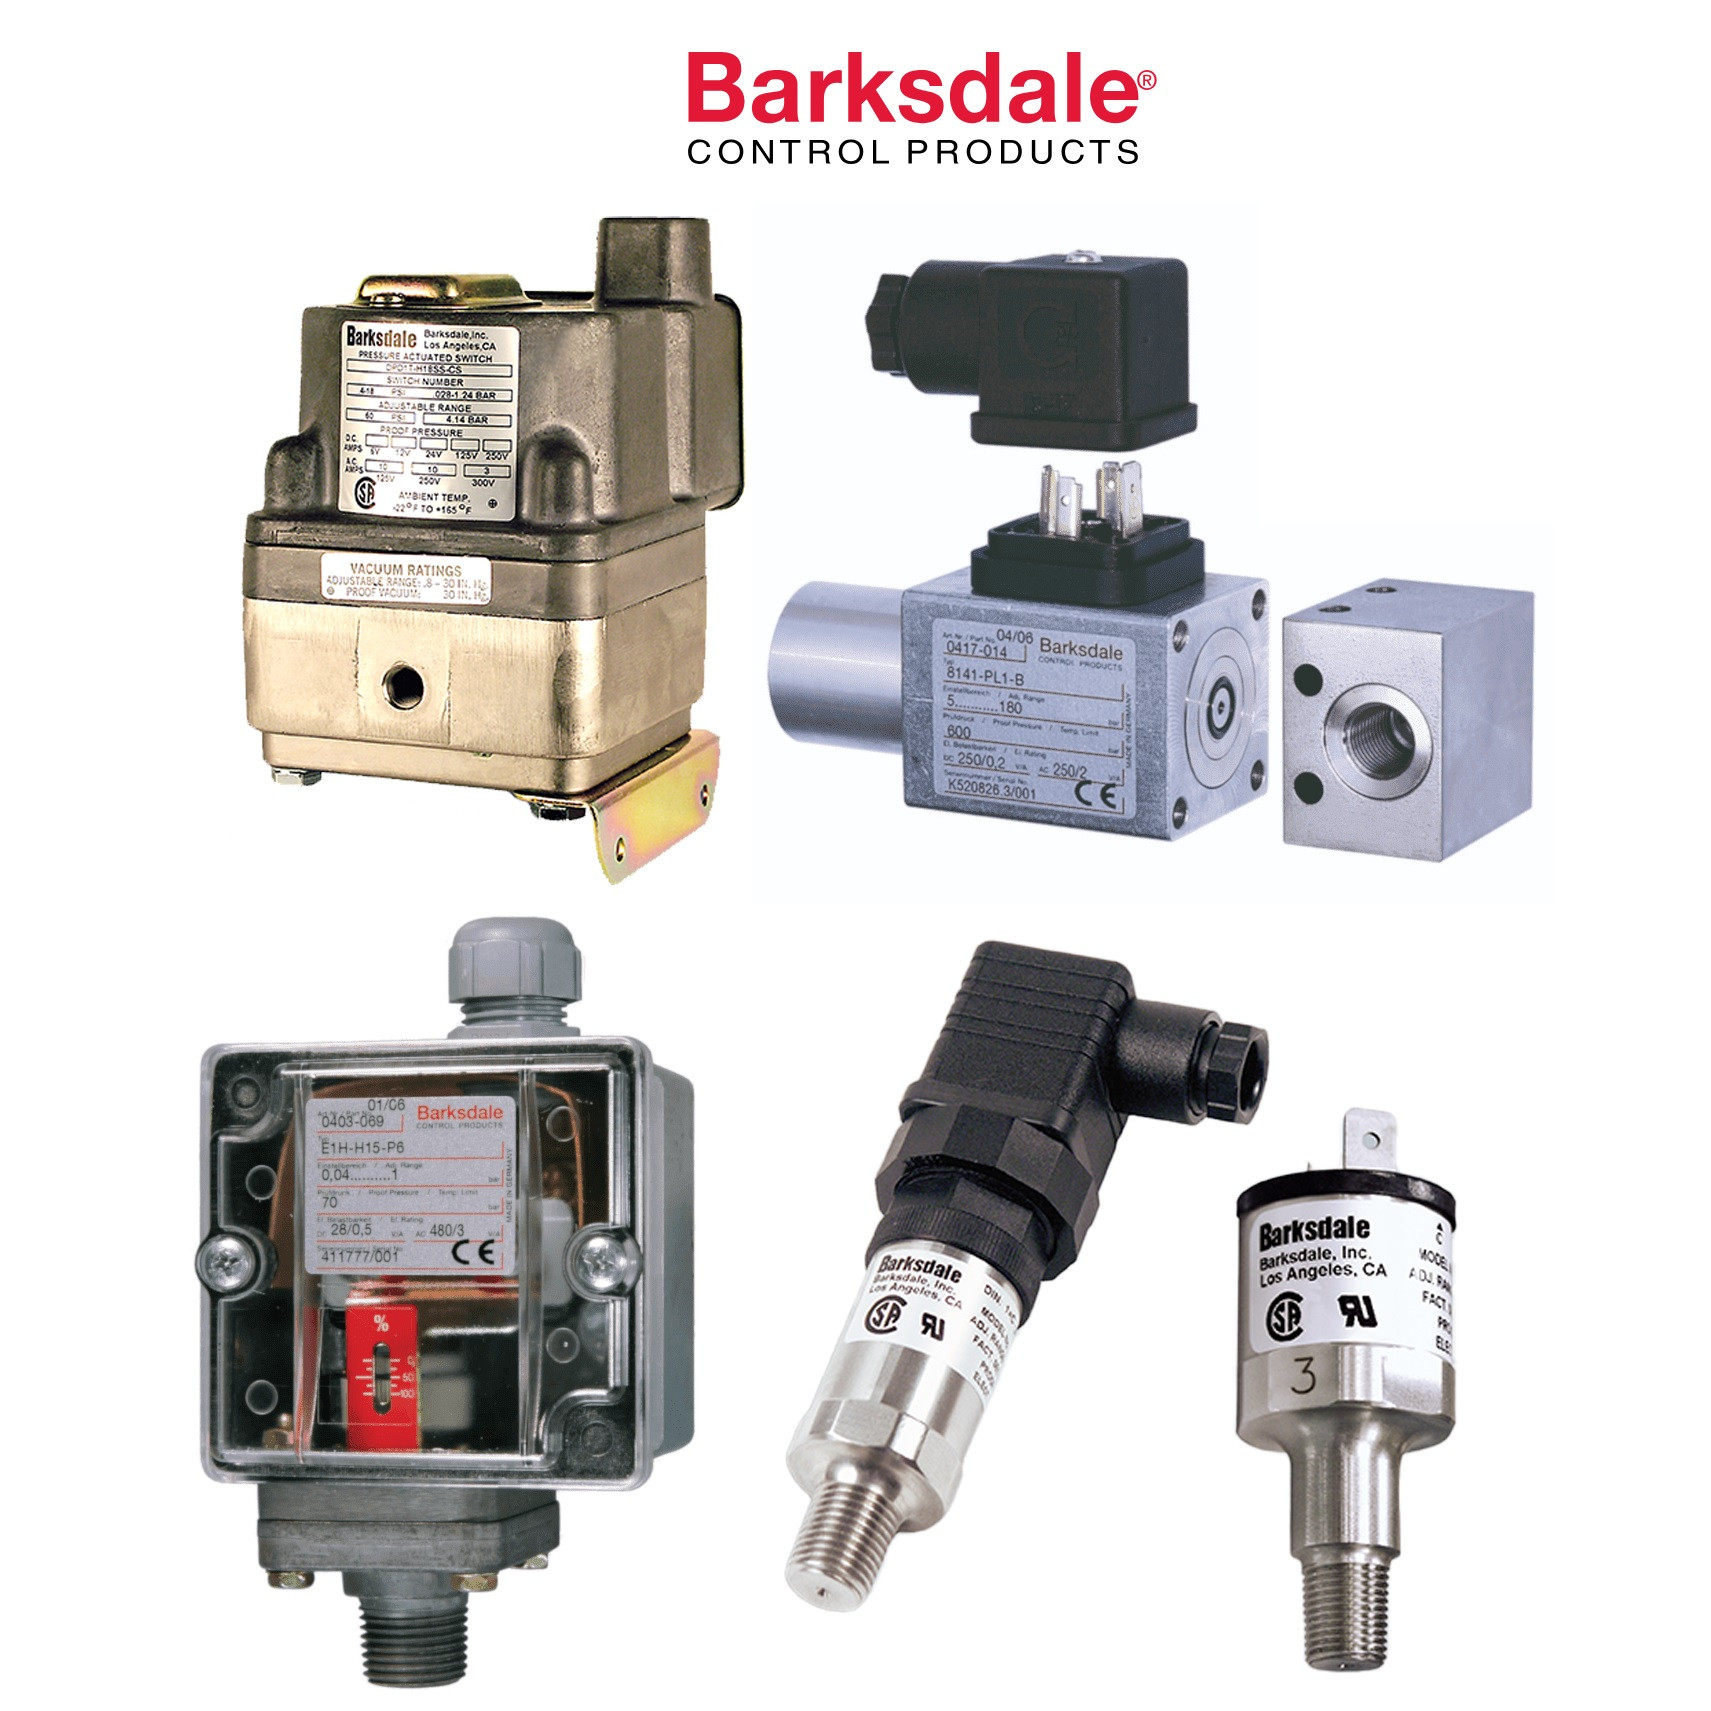 Barksdale XT-R12 500 >= Lm > 250 Level Transmitter